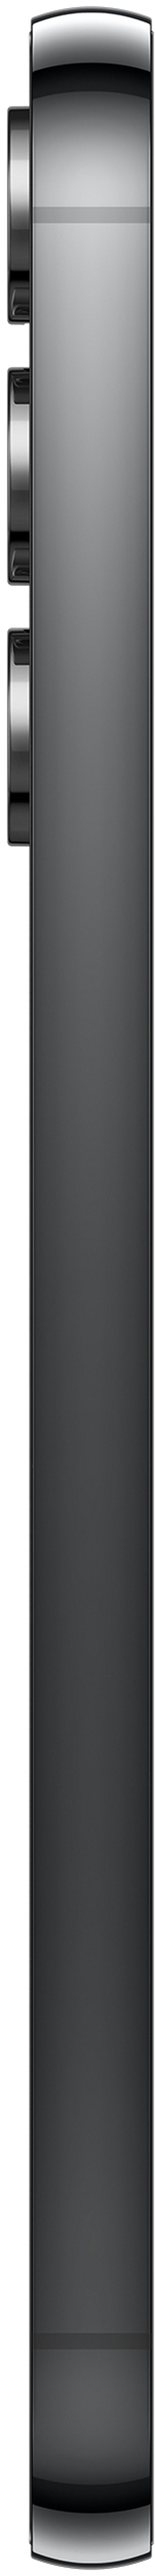 Samsung Galaxy S23+ 256GB Musta